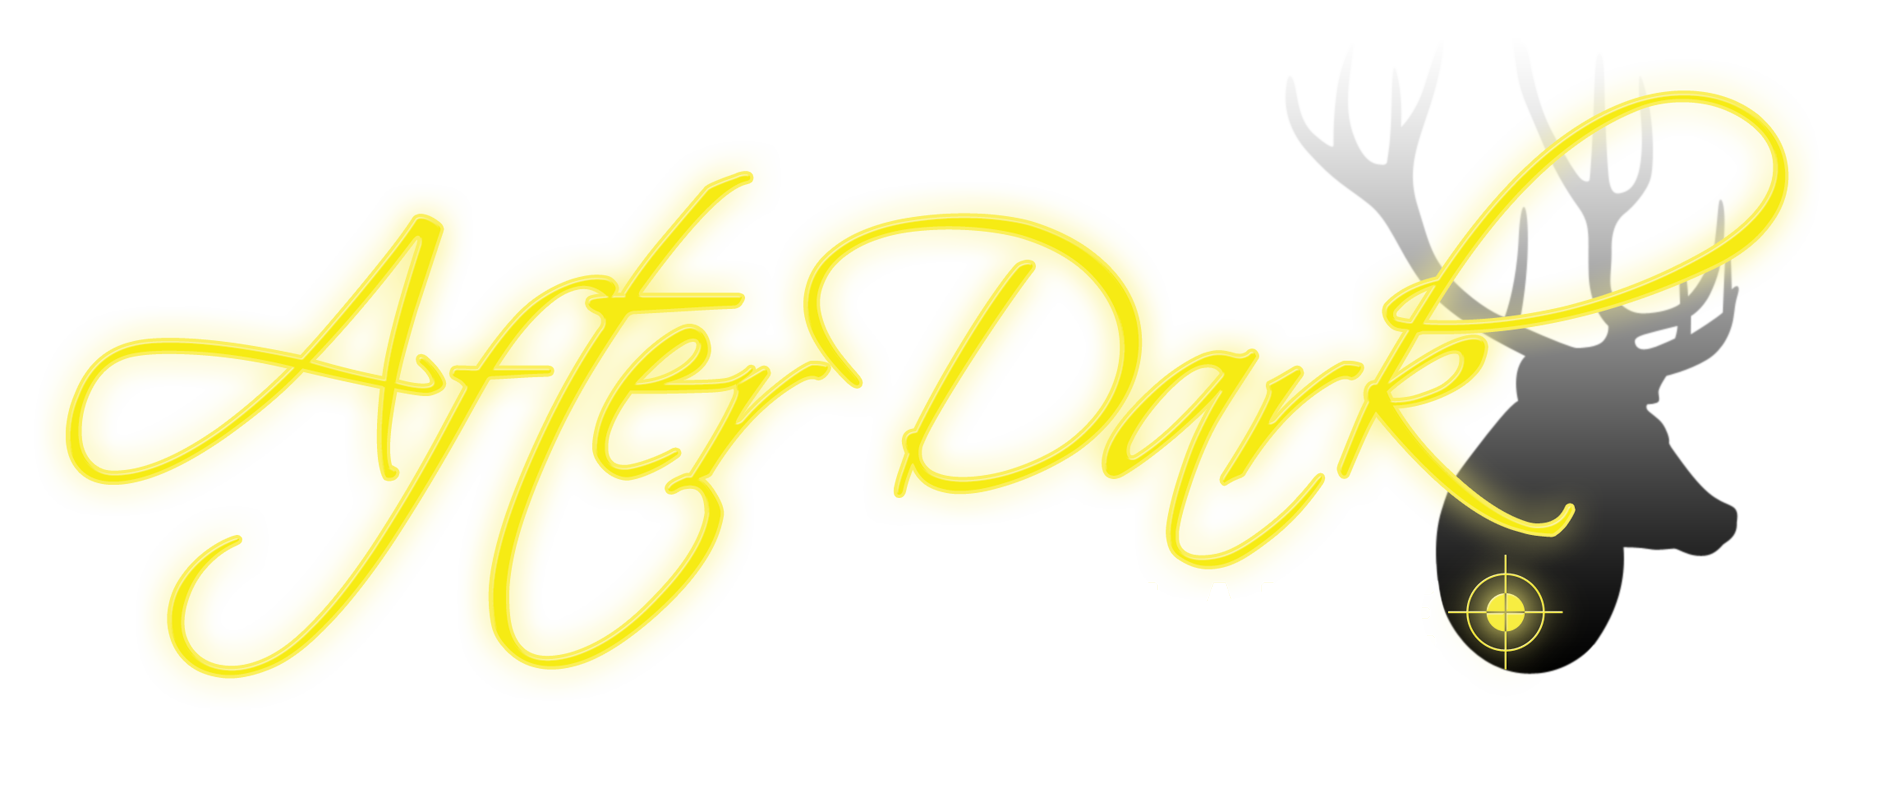 After Dark Surveillance Logo